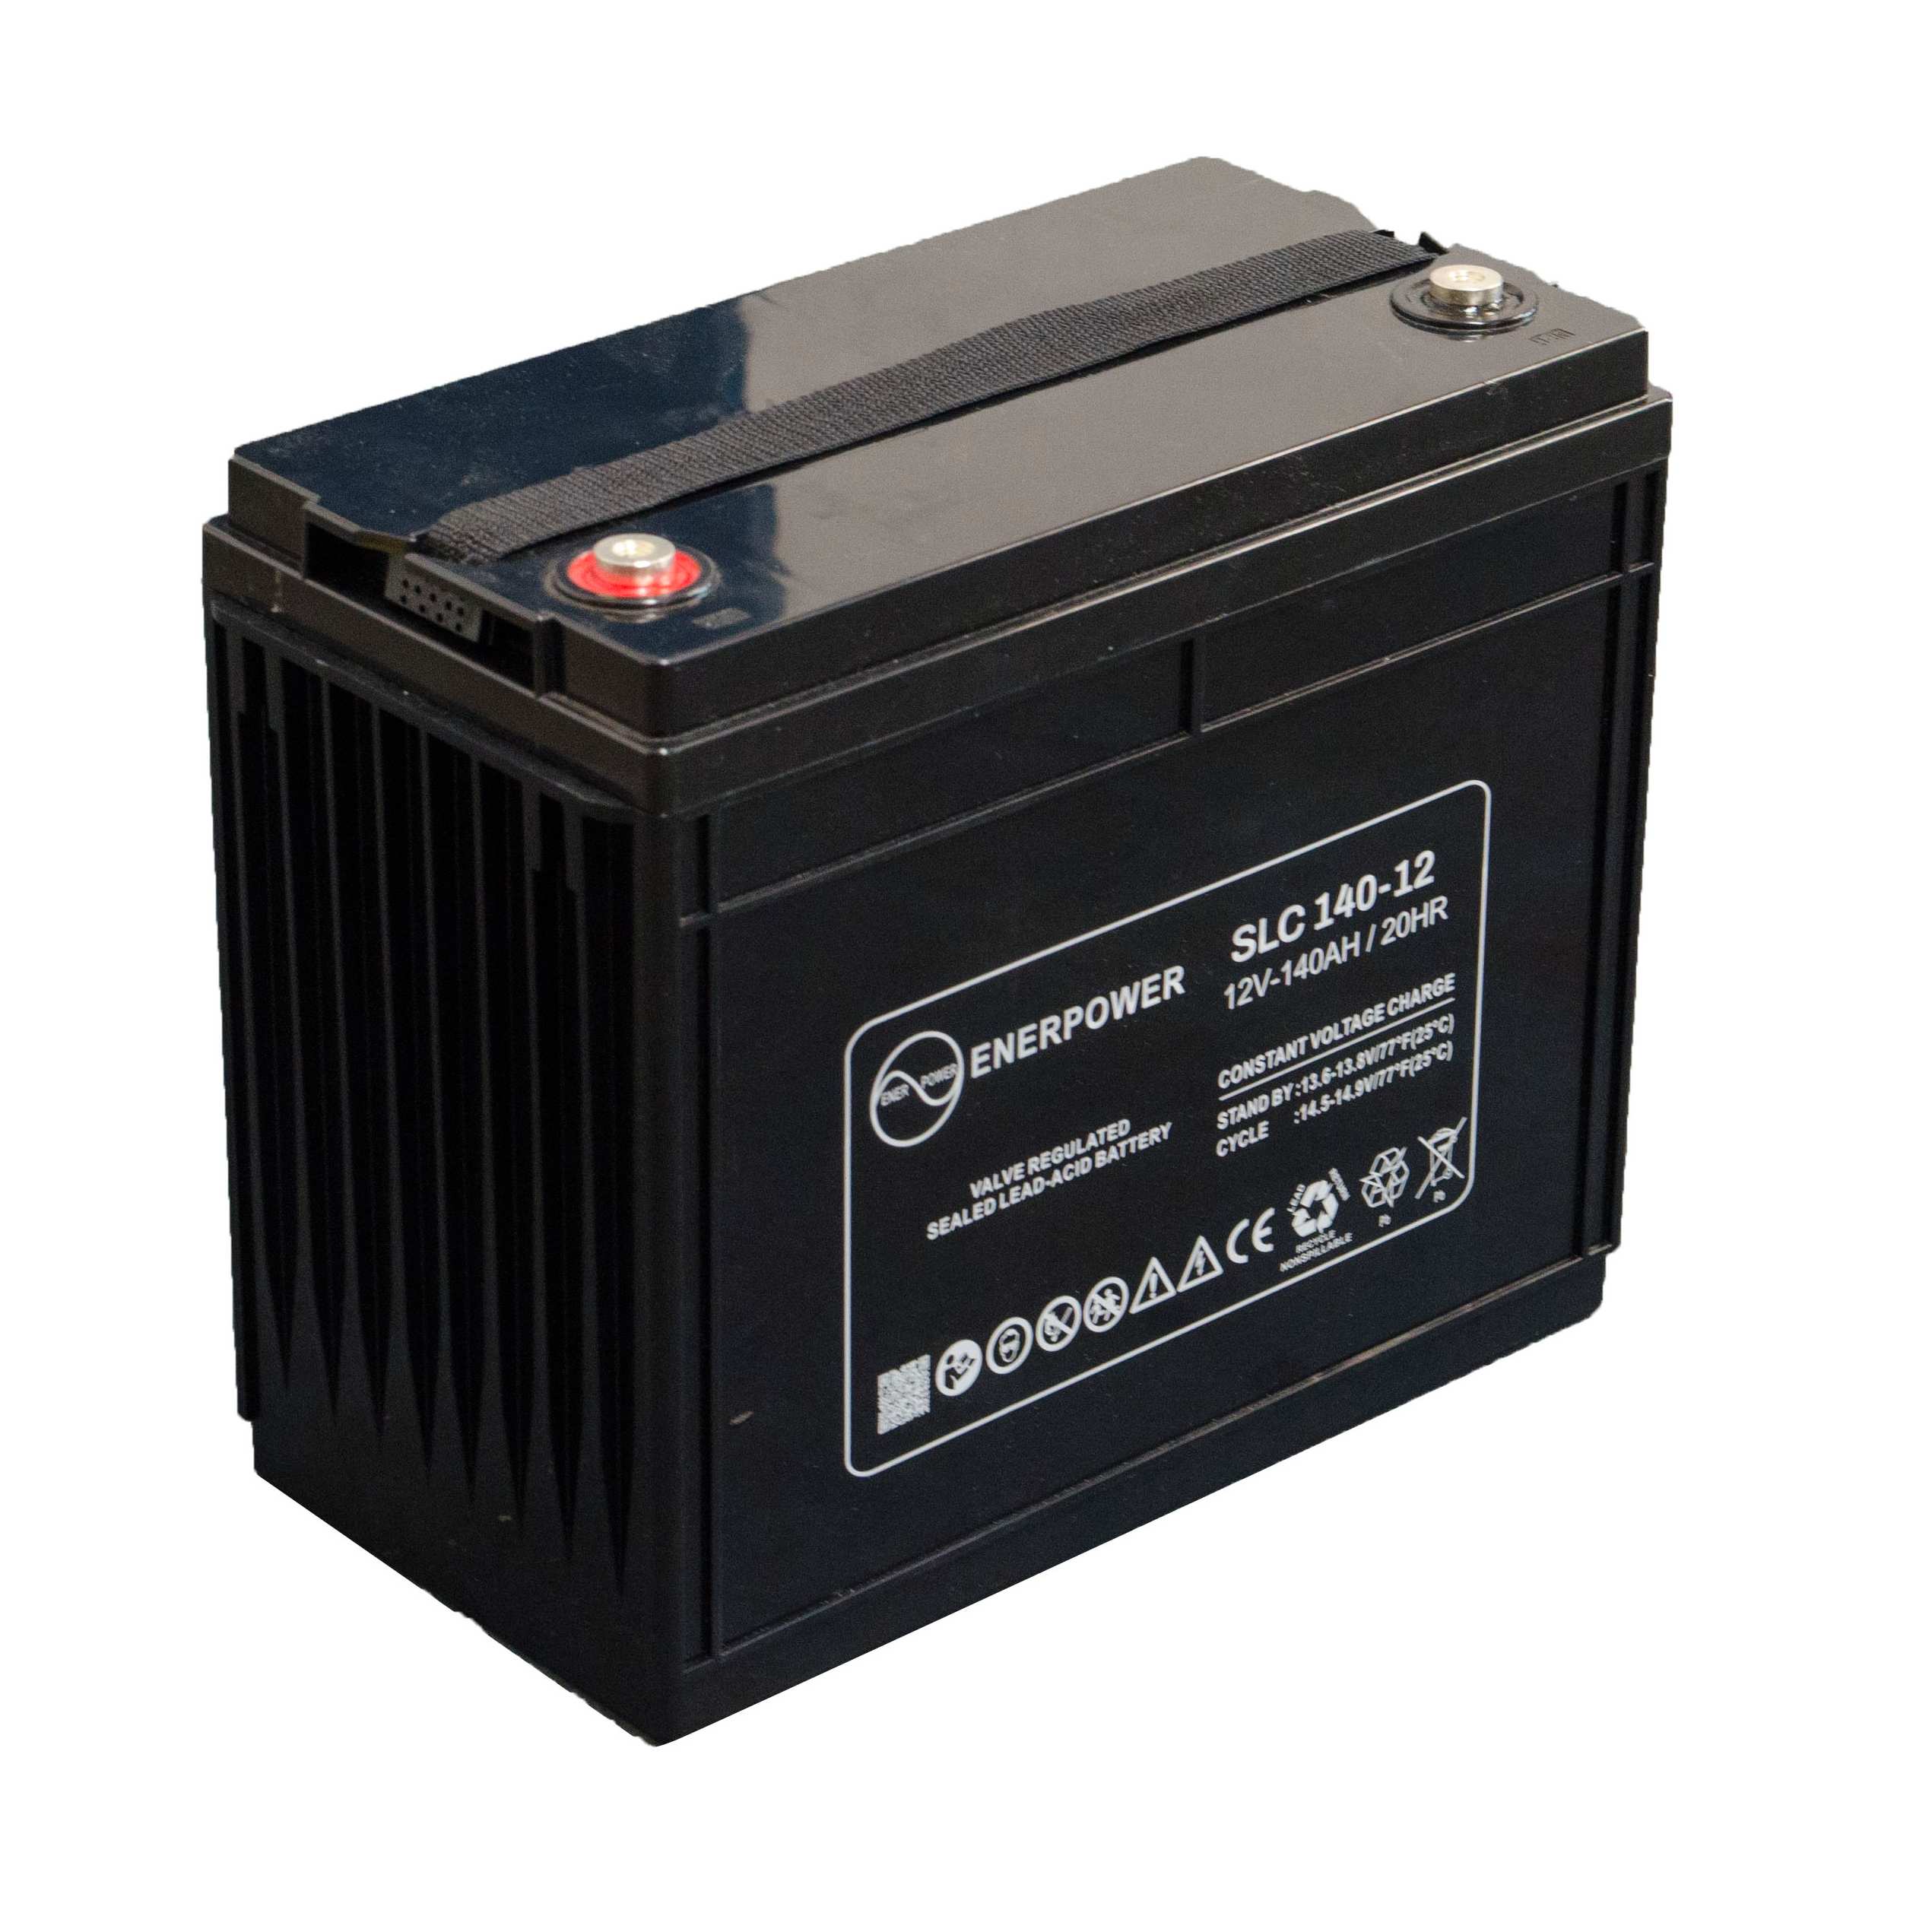 SLC 140-12 12V 140Ah AGM ENERPOWER Batterie